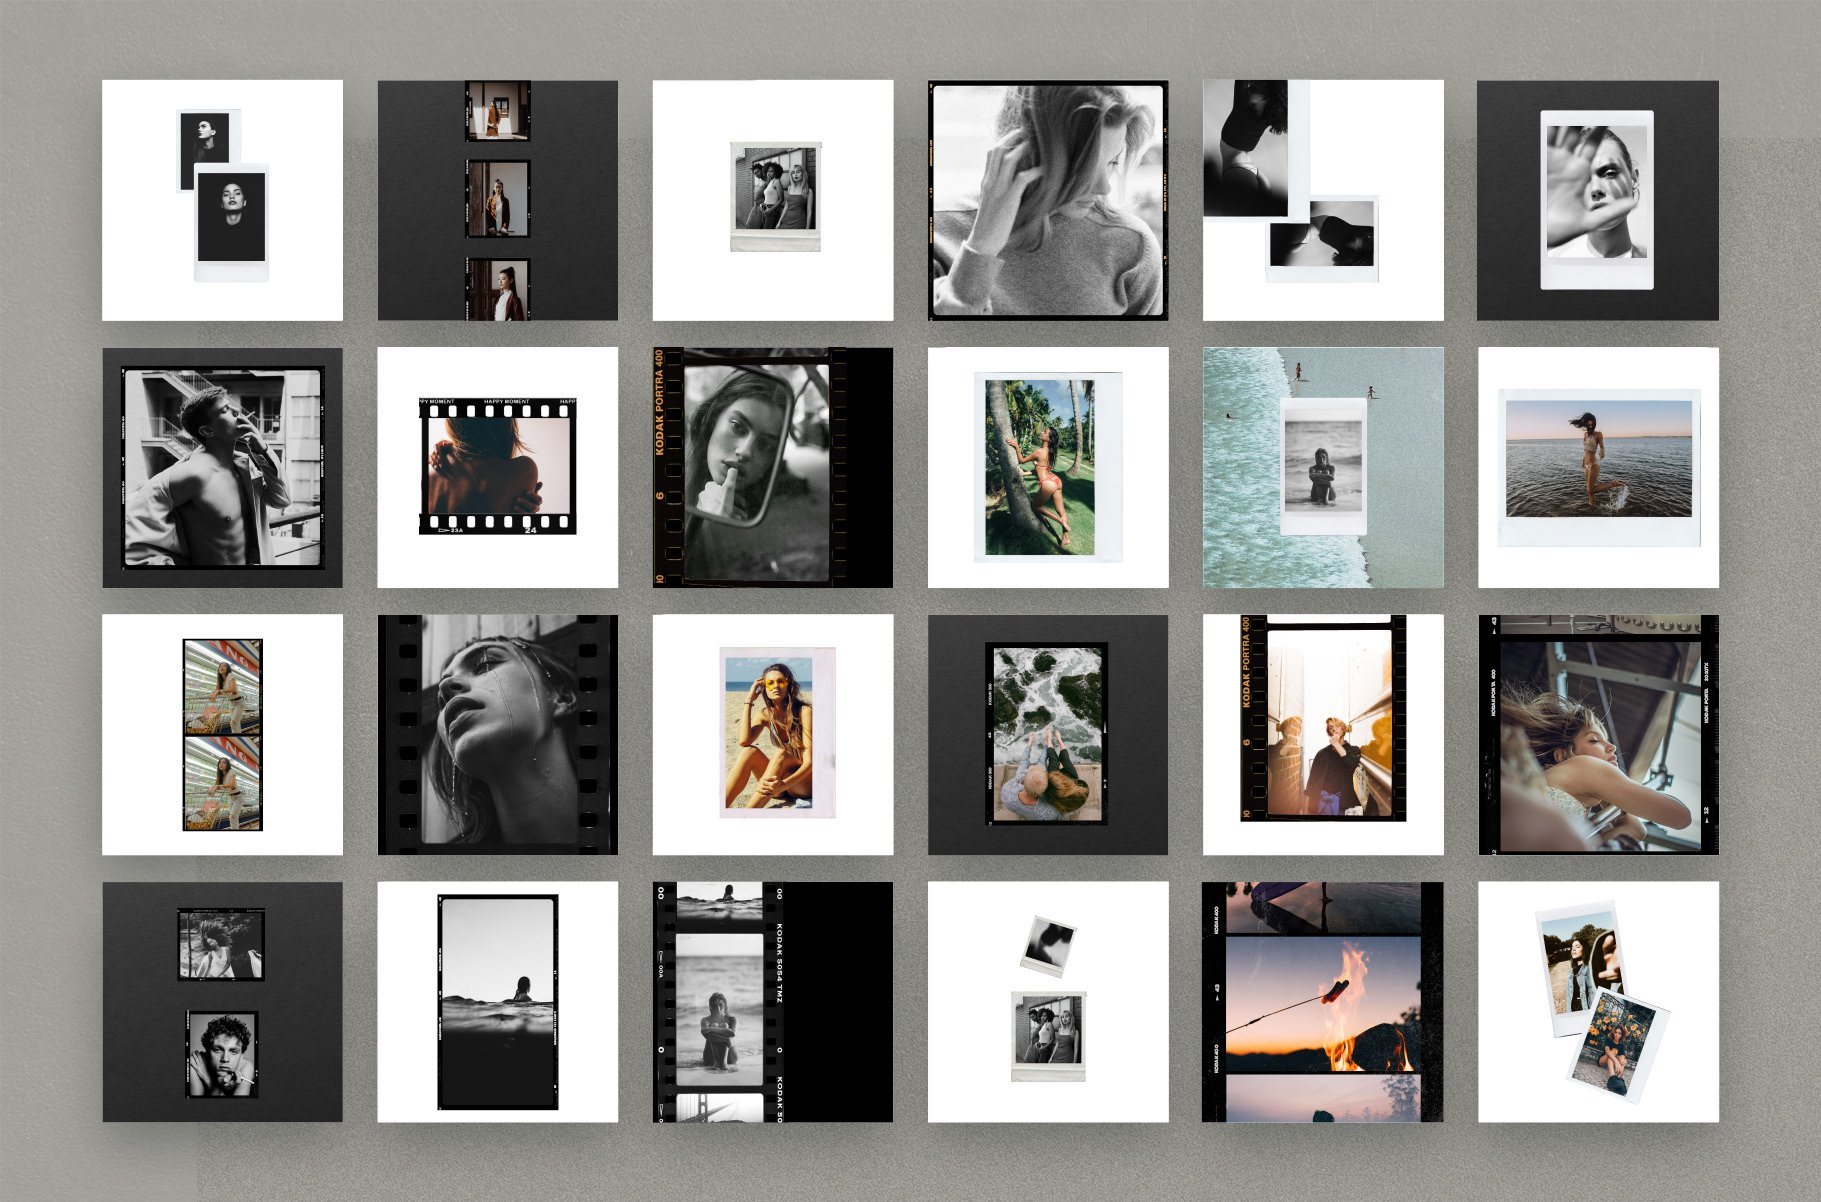 Kino - 110 Film Frames & Instant Instagram Stories